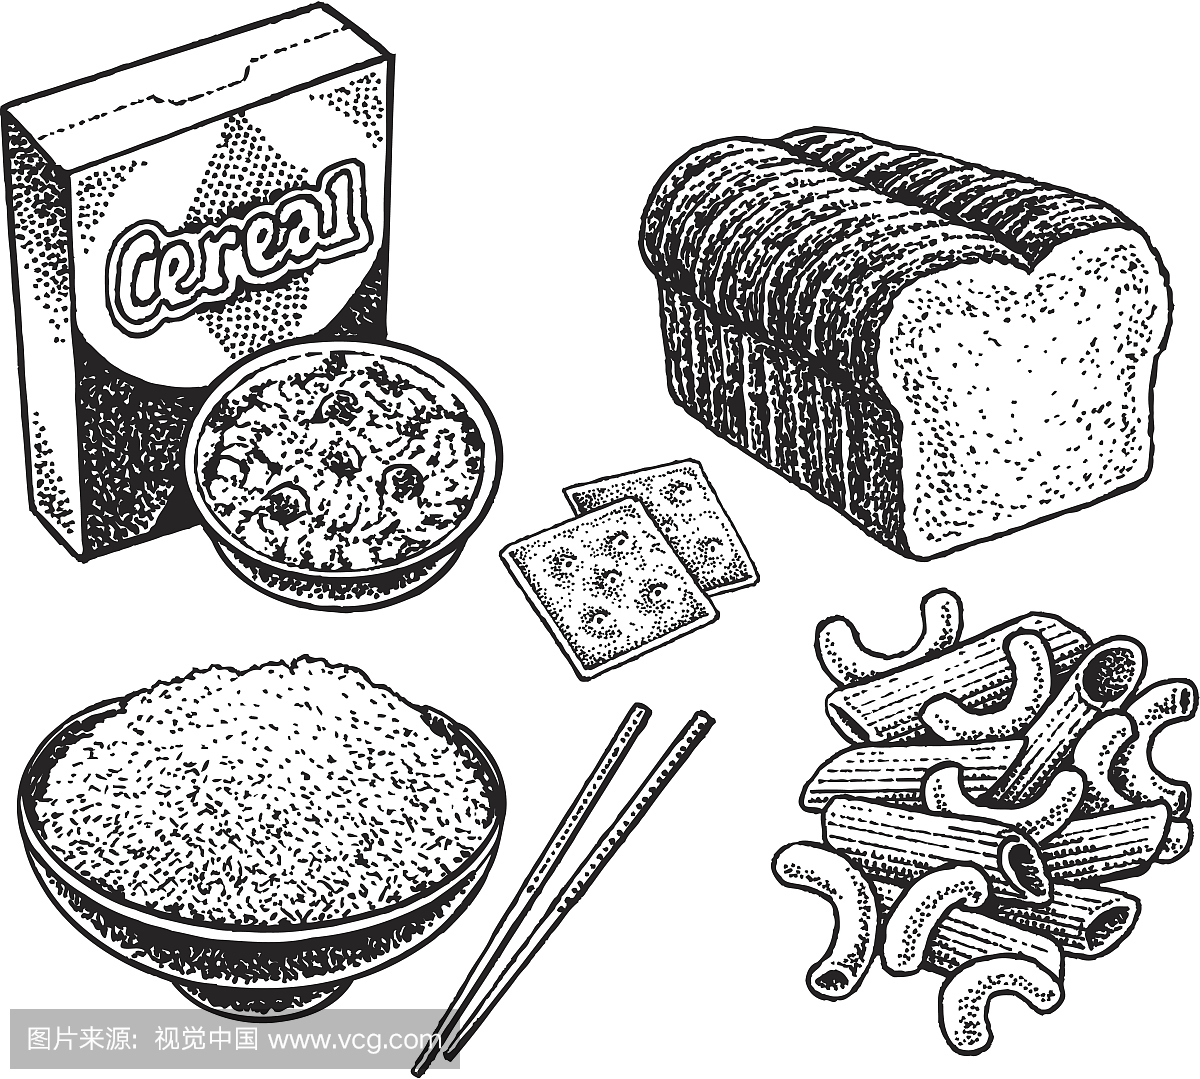 碳水化合物 - 饼干,面包,谷物,米饭,面食